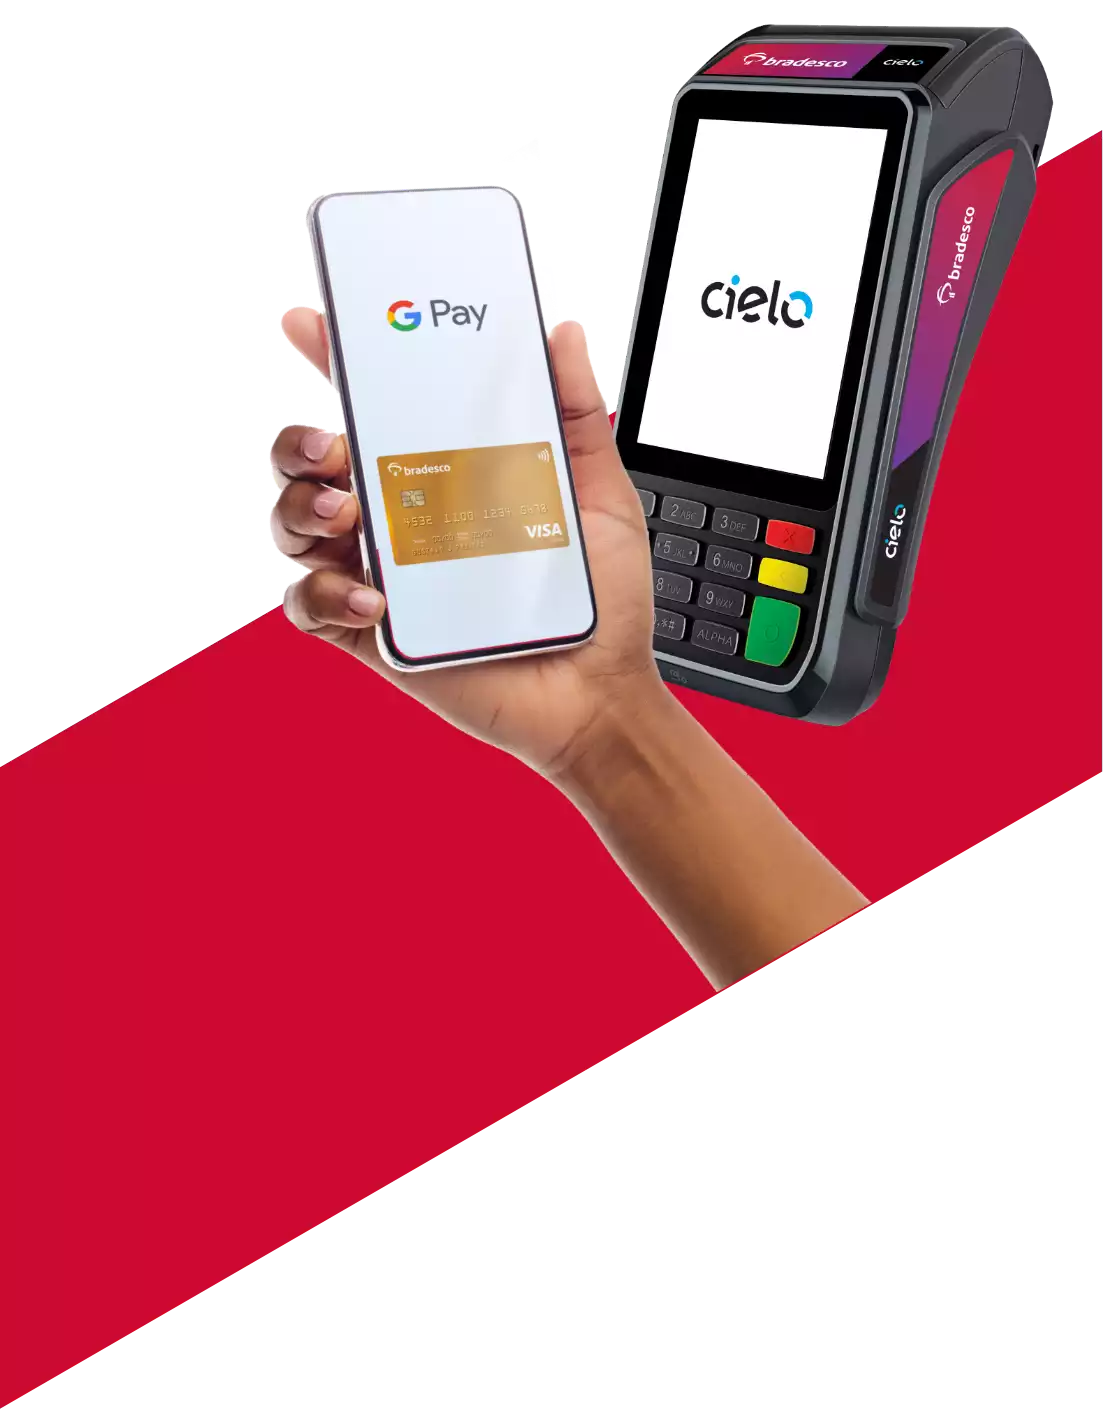 #BradescoAcessível #PraTodoMundoVer: Mão segurando o celular com o cartão Visa na tela. Ao fundo, maquininha de pagamento com a marca Cielo na tela.